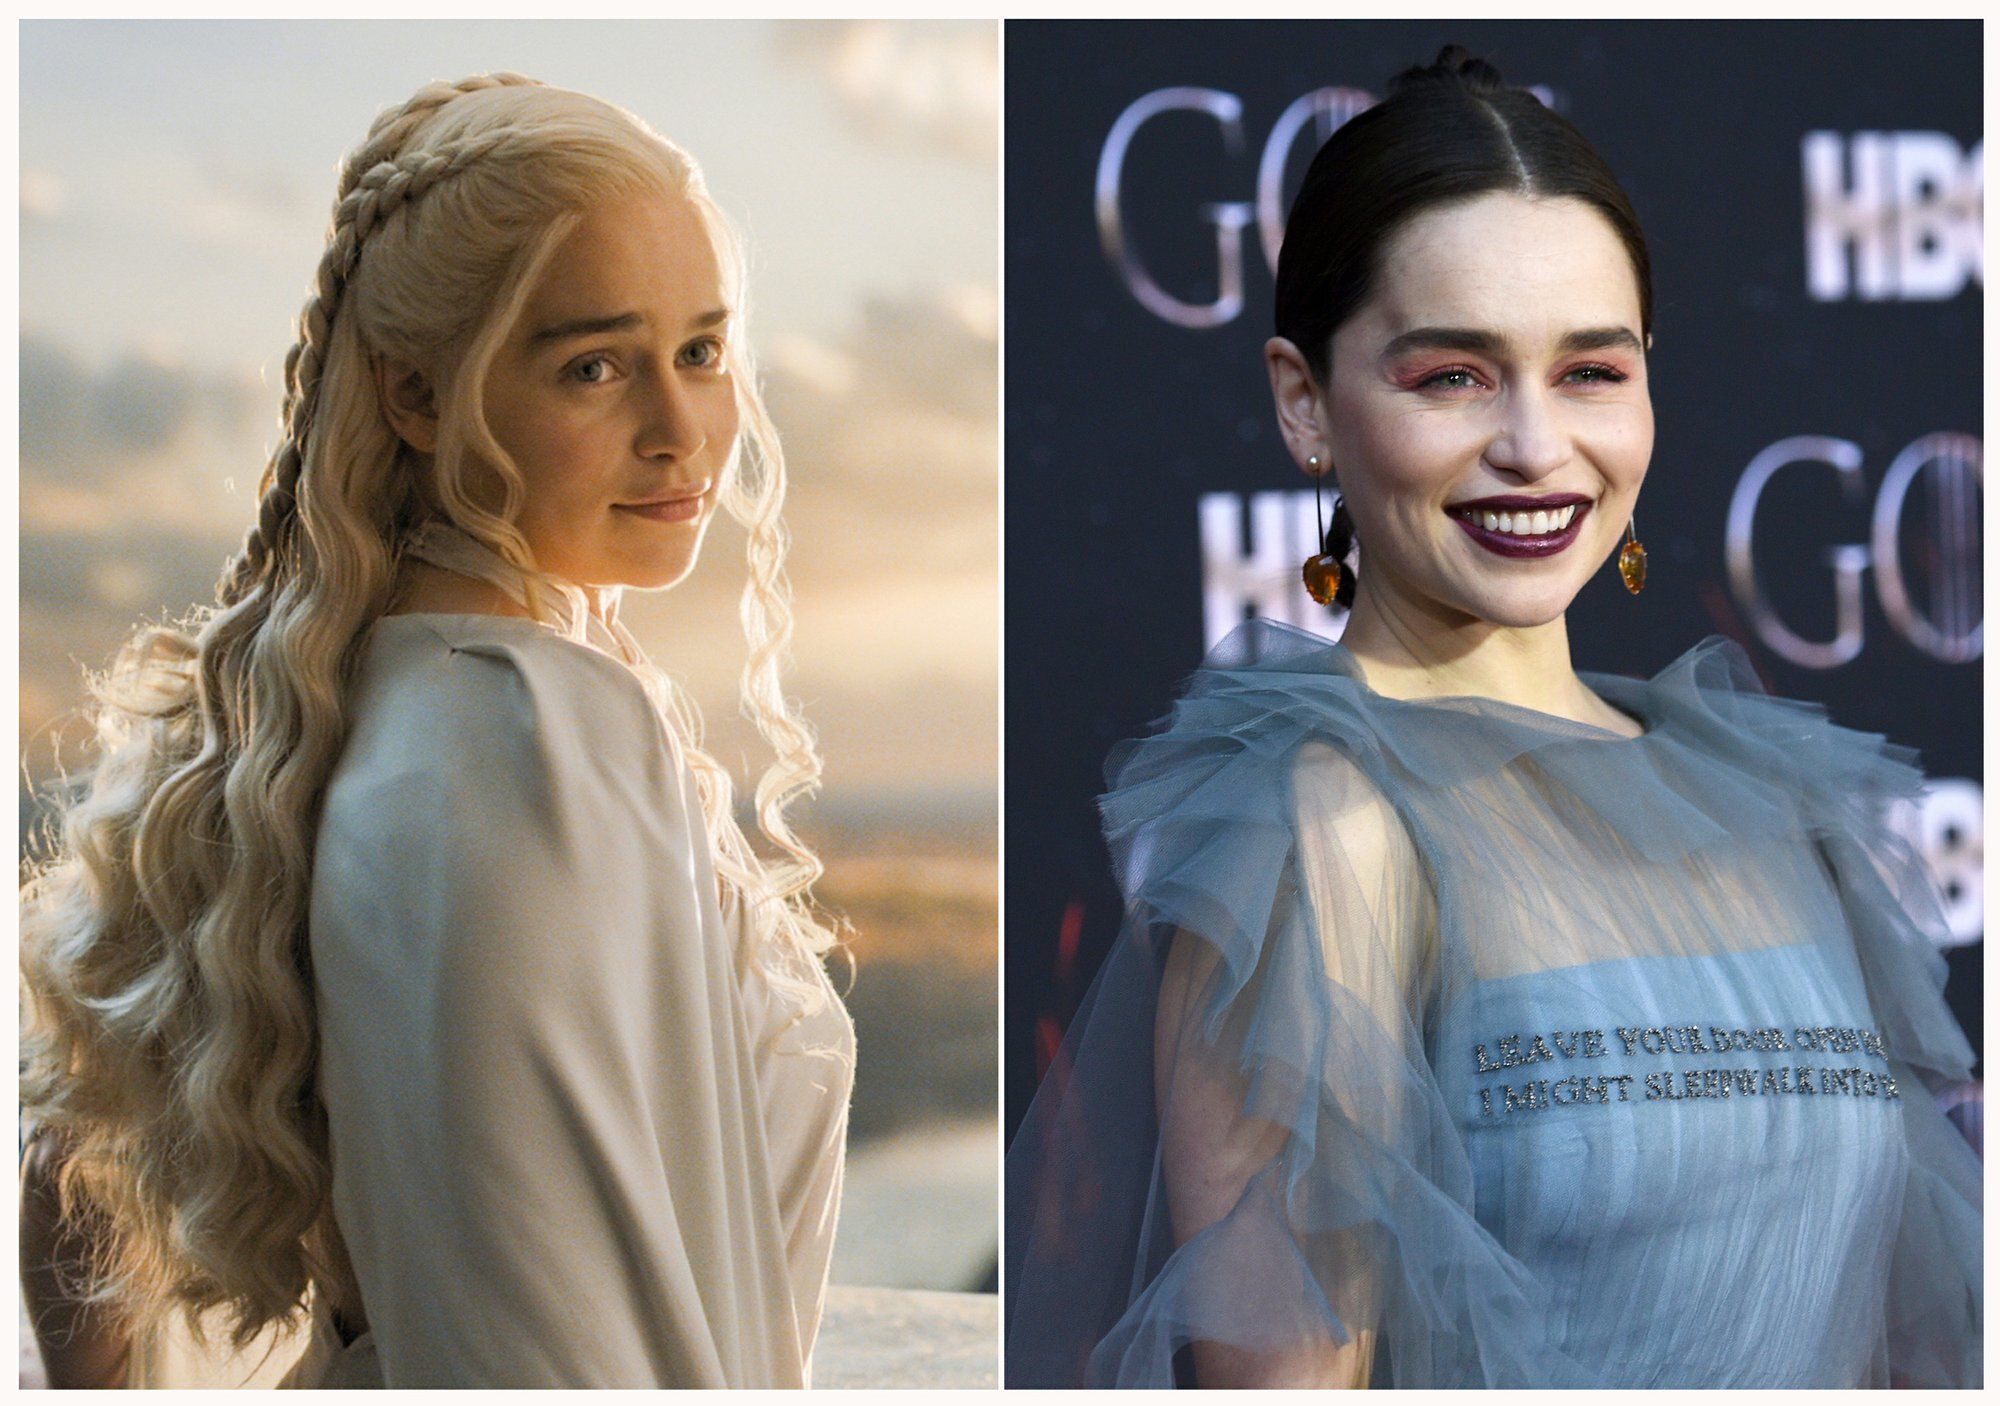 Game of Thrones  Elenco reunido em fotos incríveis da última temporada